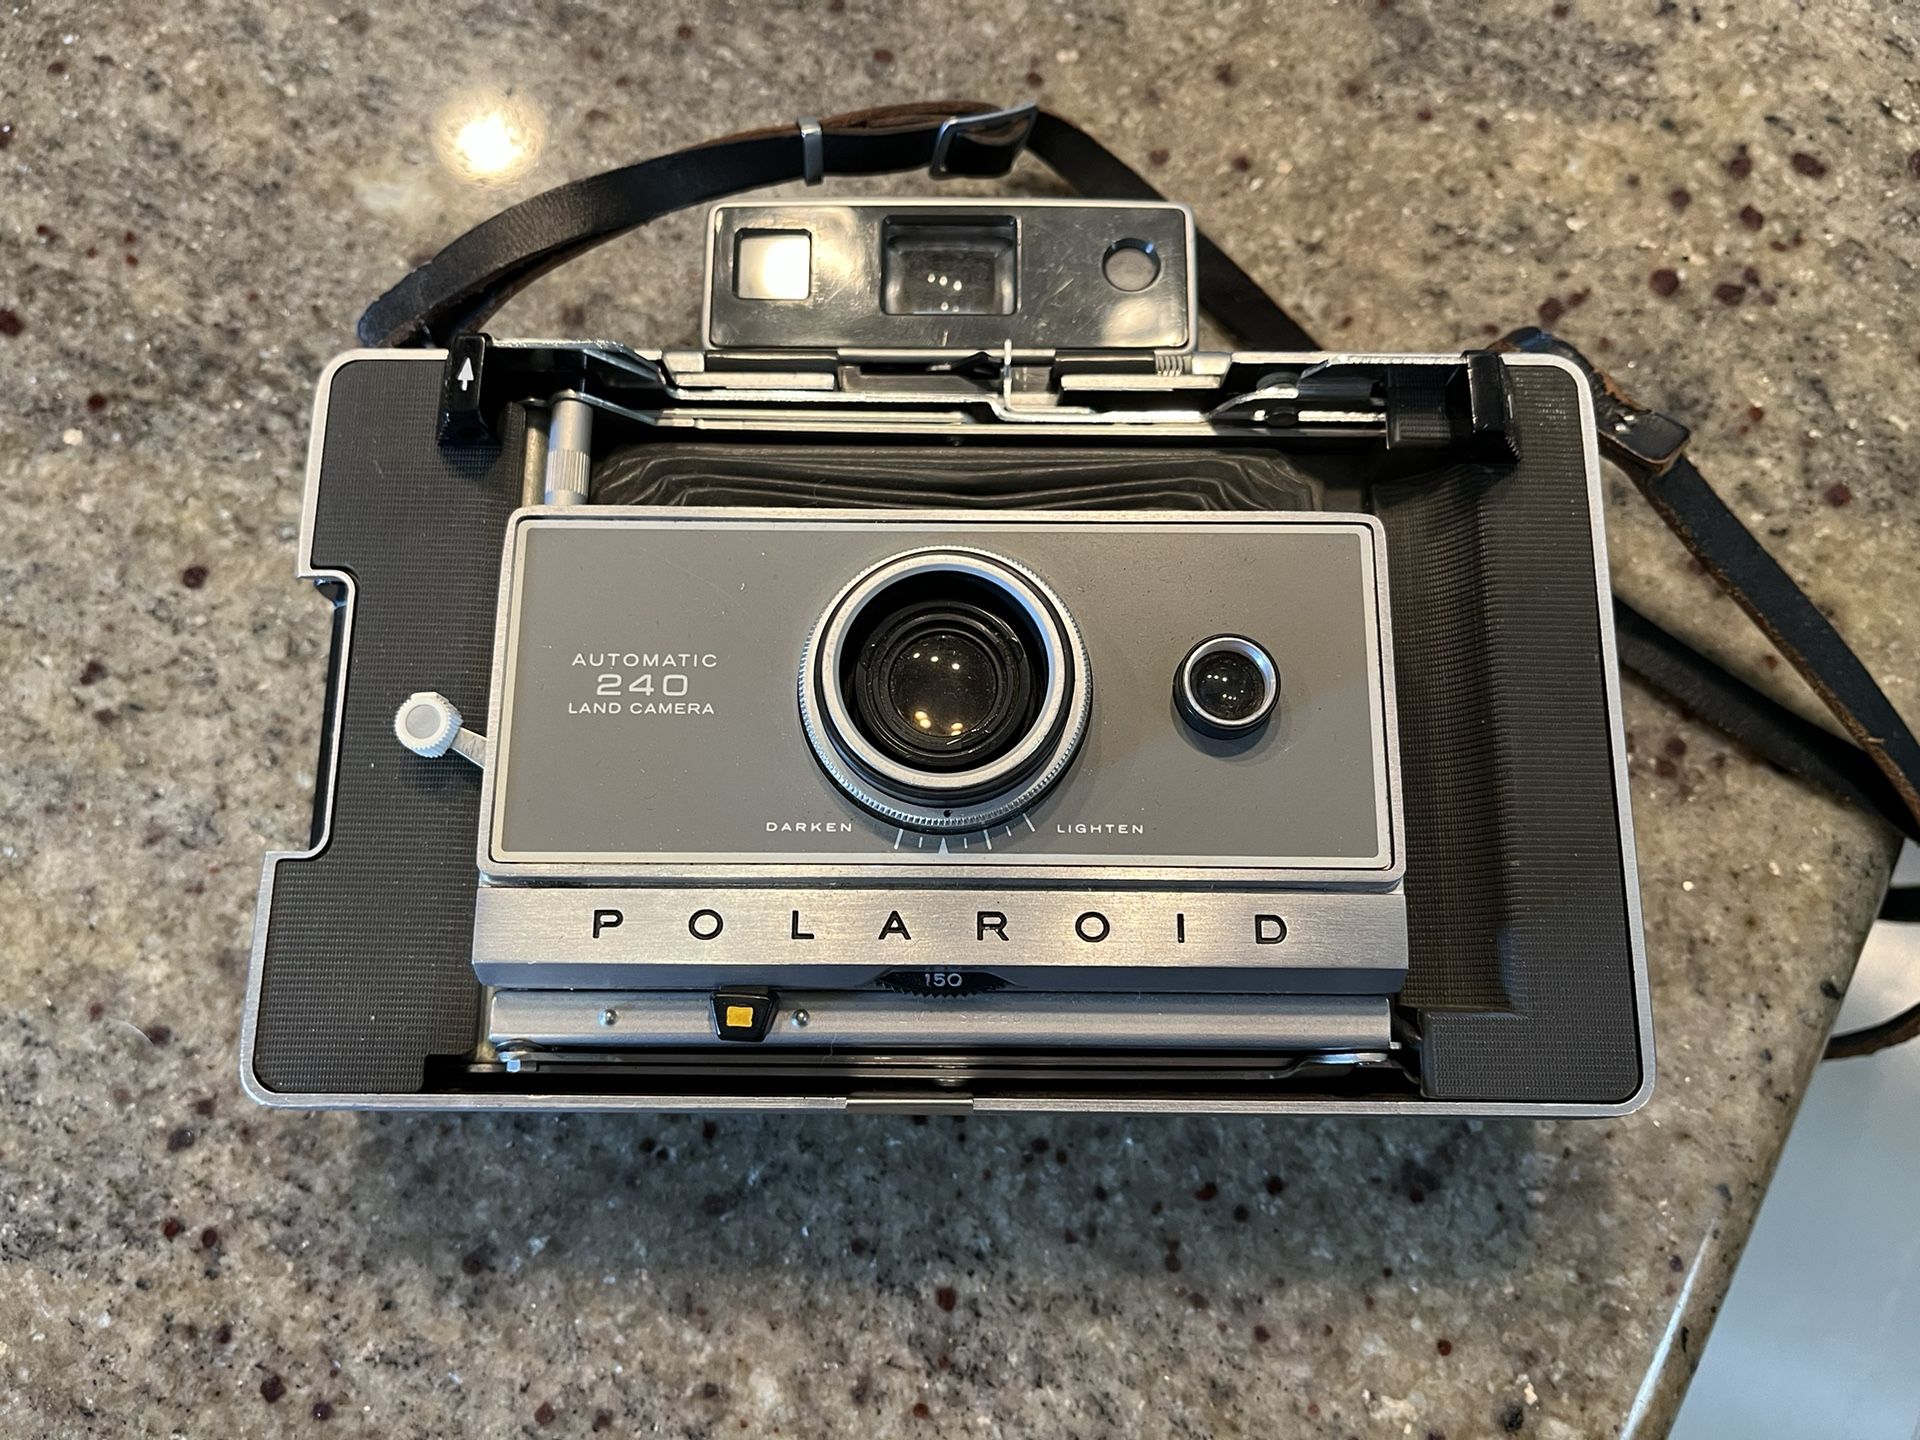 Antique Photo Equipment And Polaroid Camera